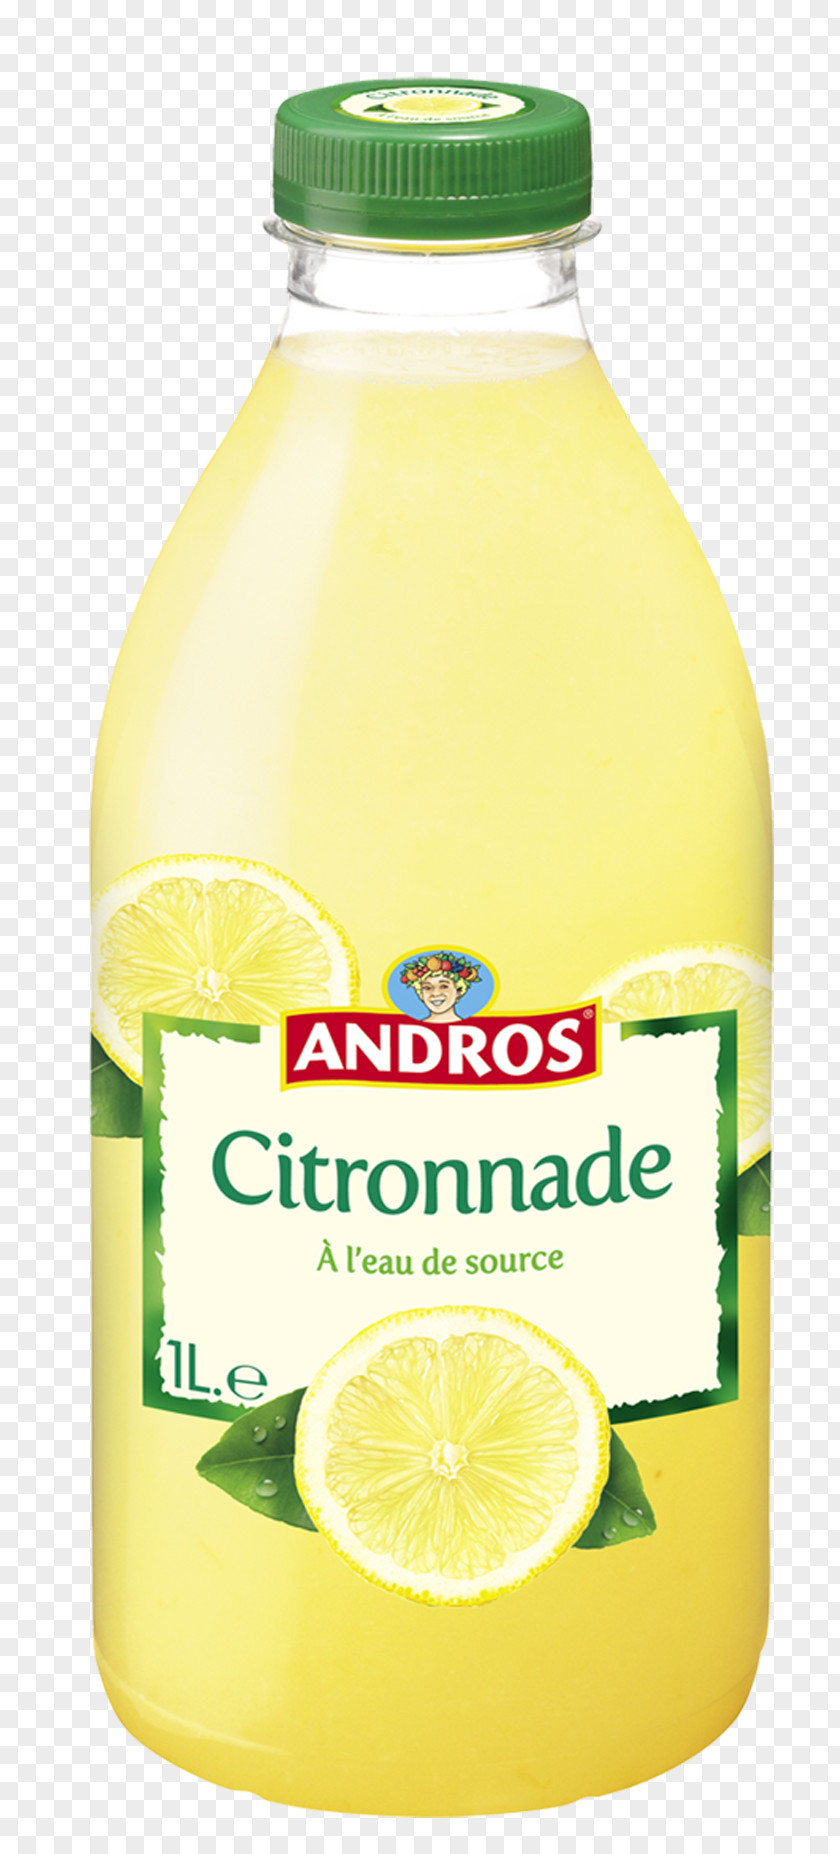 Lemon Juice Lime Andros France Fruchtsaft PNG